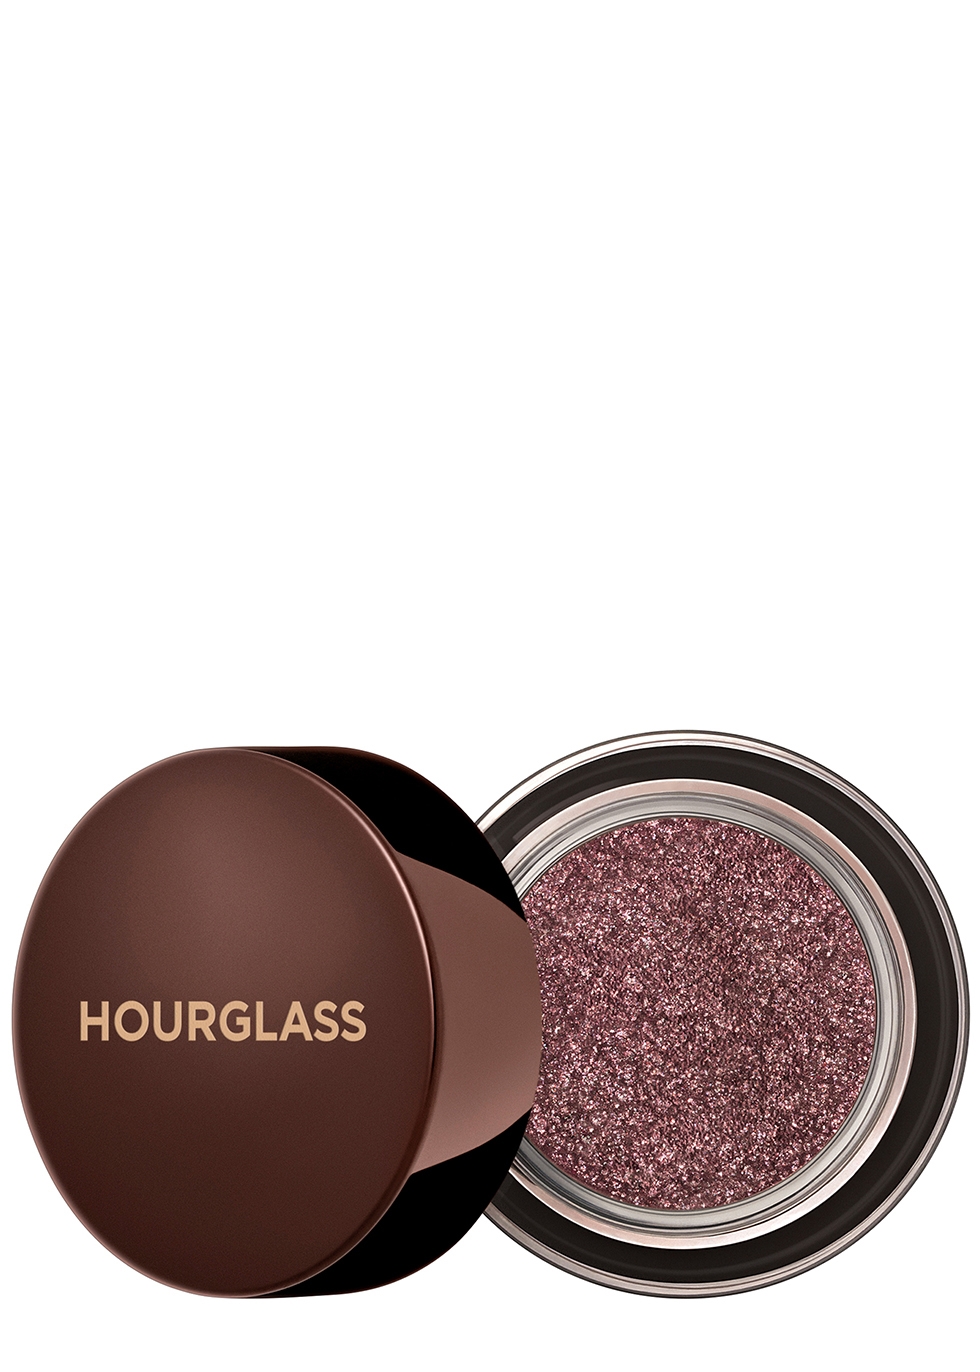 hourglass makeup europe